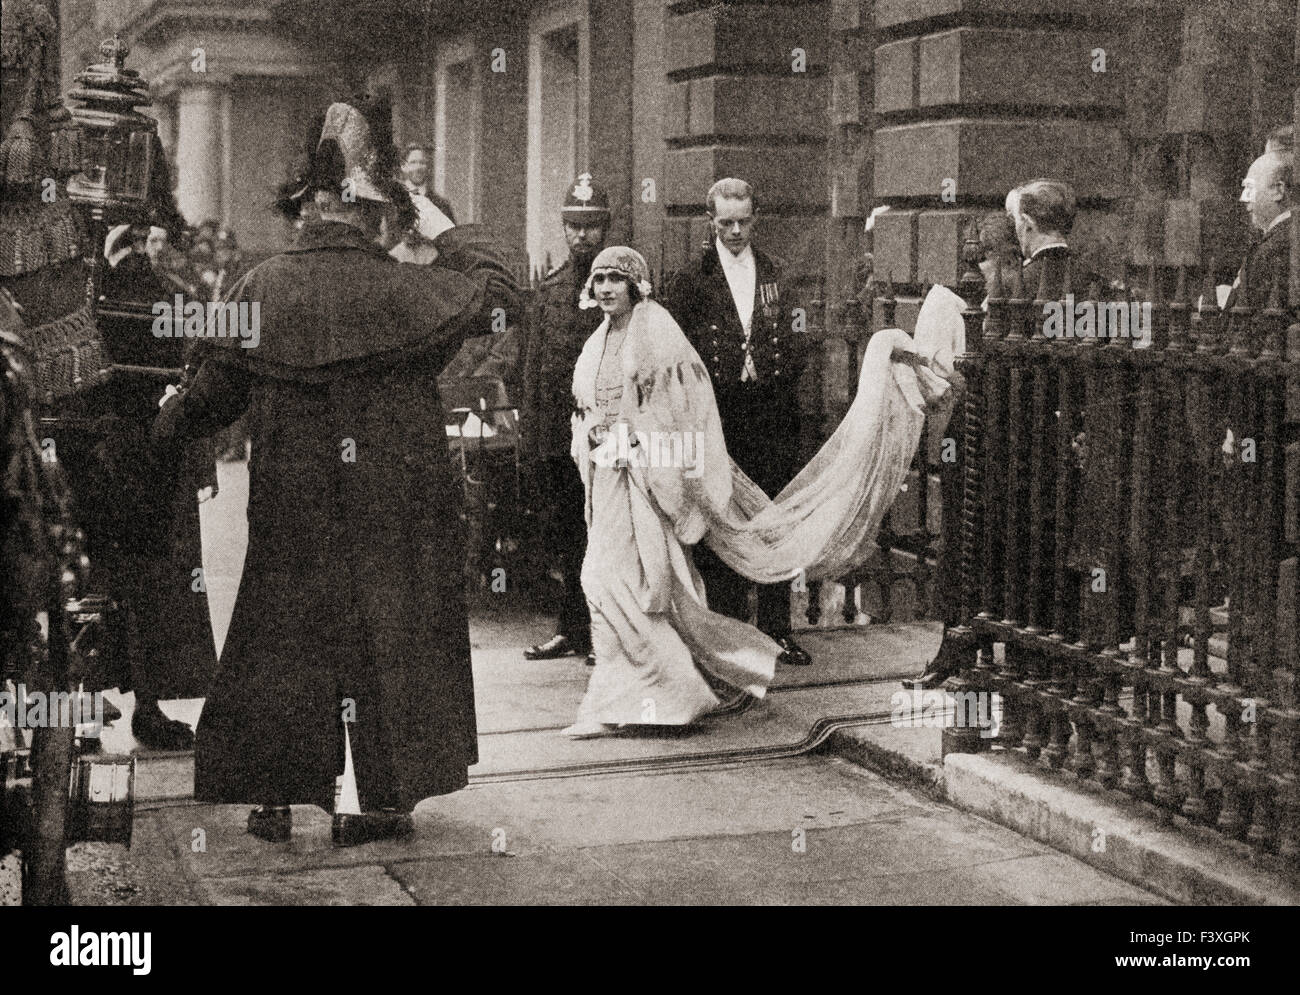 Lady Elizabeth Bowes Lyon en route pour son mariage le 26 avril 1923, à S.A.R. le duc d'York, futur roi George VI. Elizabeth Angela Marguerite Bowes-Lyon, 1900 - 2002. George VI, 1895 - 1952. Roi du Royaume-Uni. Banque D'Images